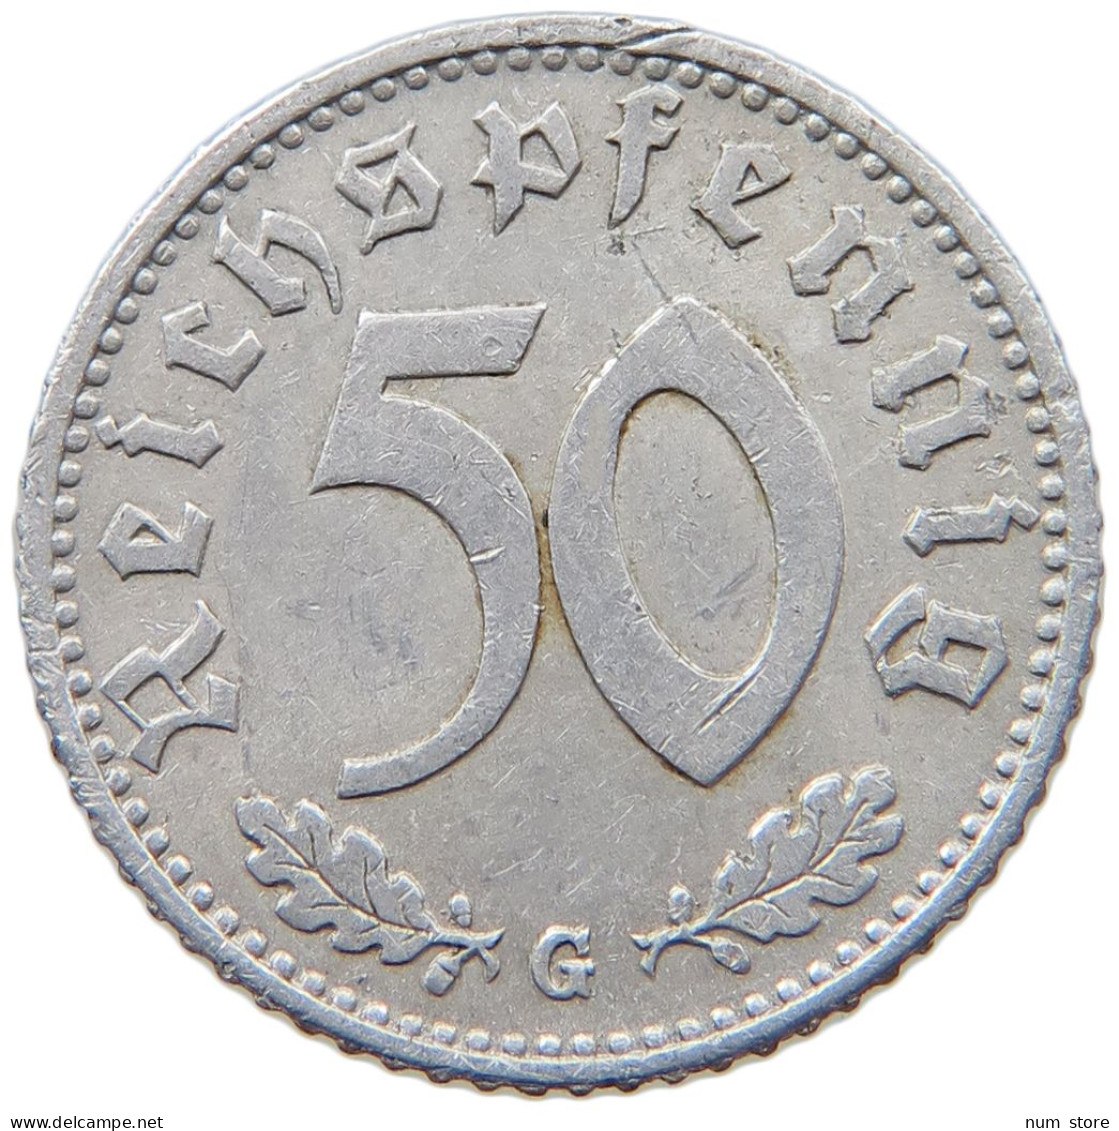 GERMANY 50 REICHSPFENNIG 1944 G #t030 0447 - 50 Reichspfennig